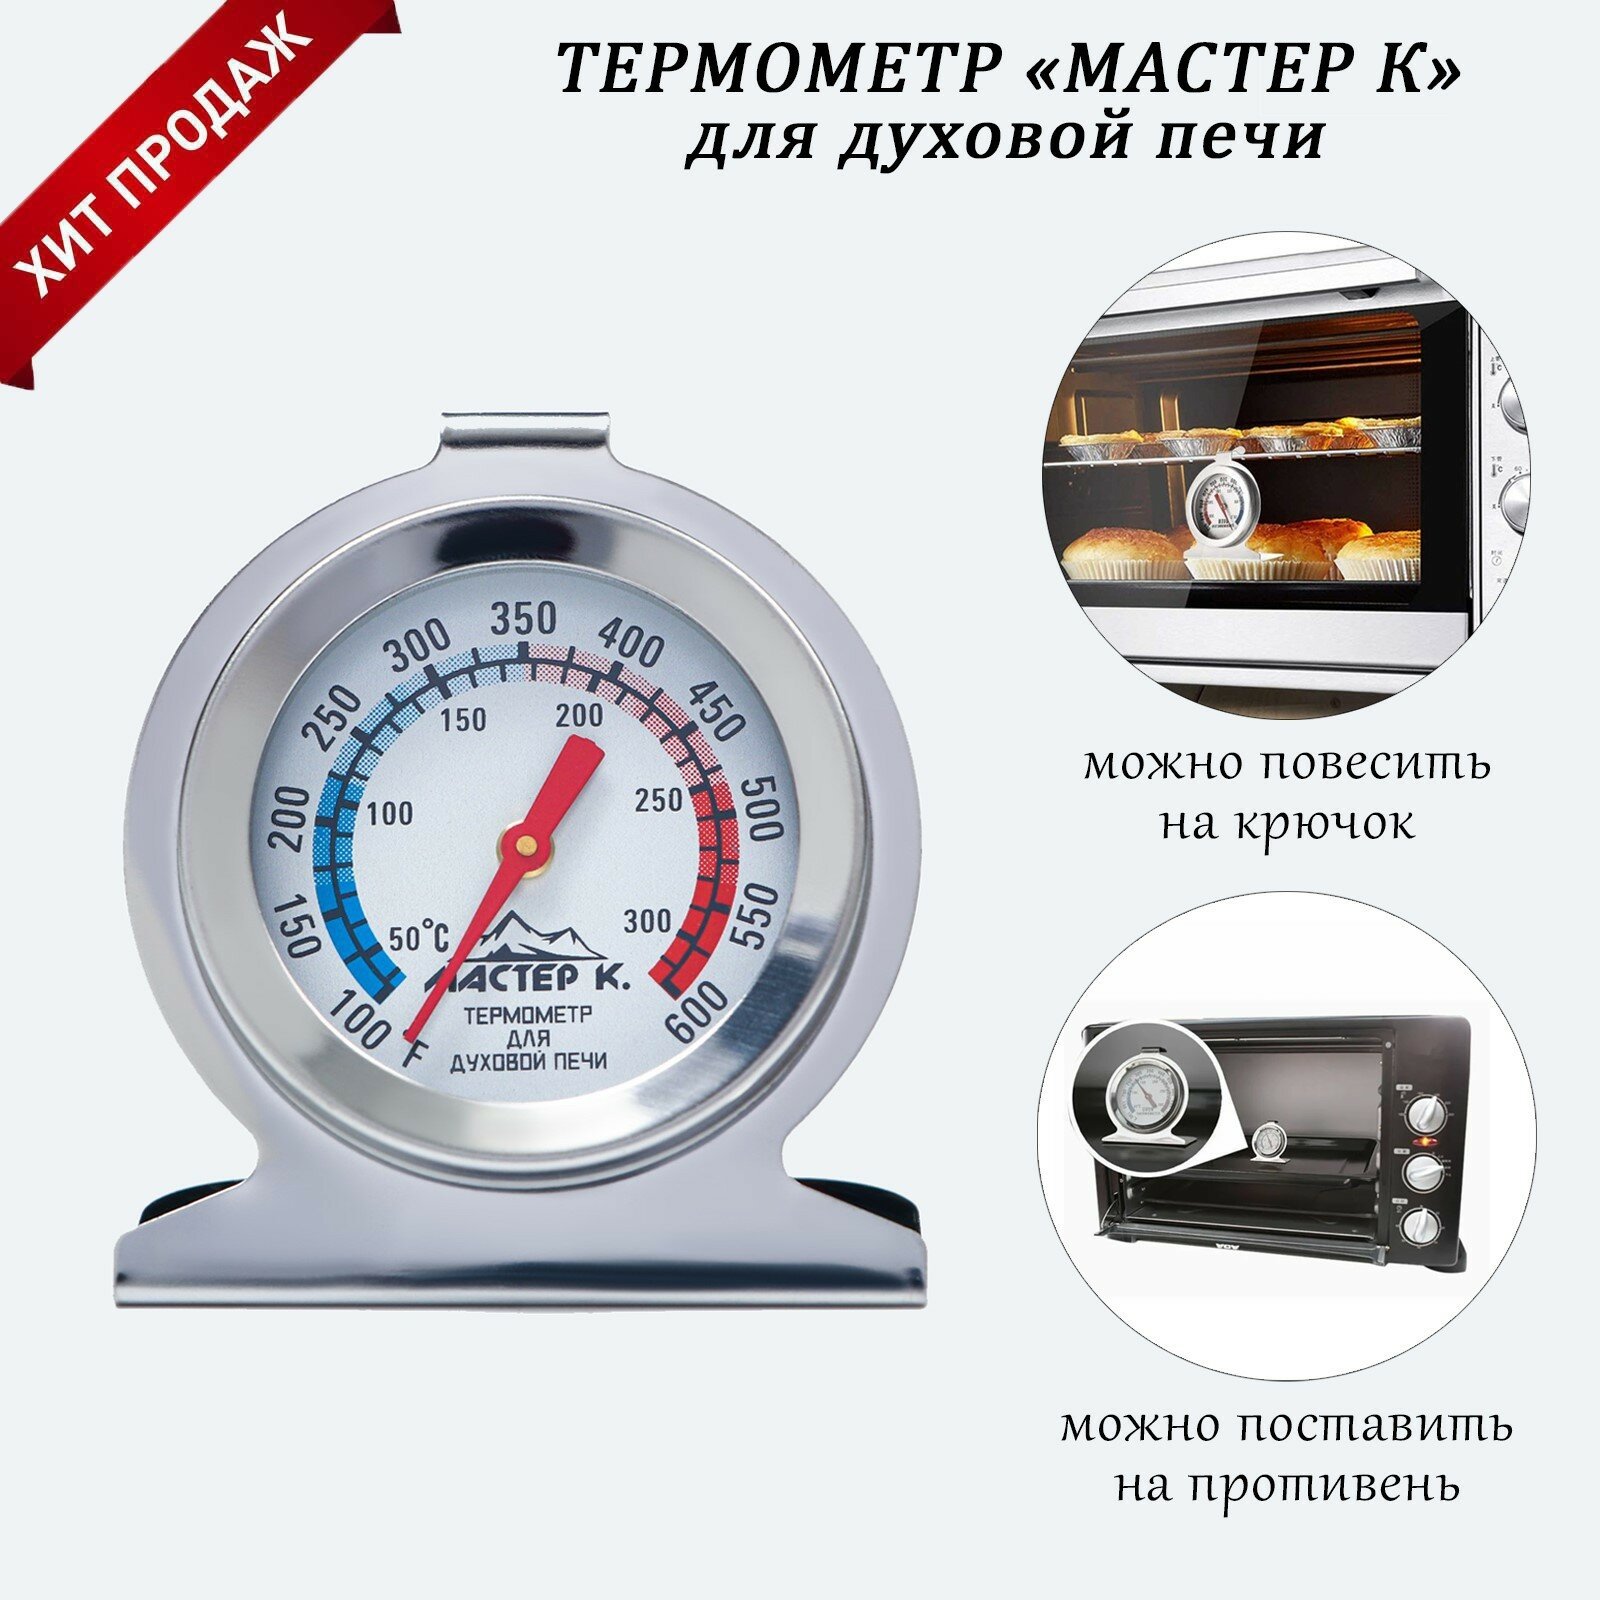 Термометр "Для духовой печи", 50 -300 °C, 6 х 7 см